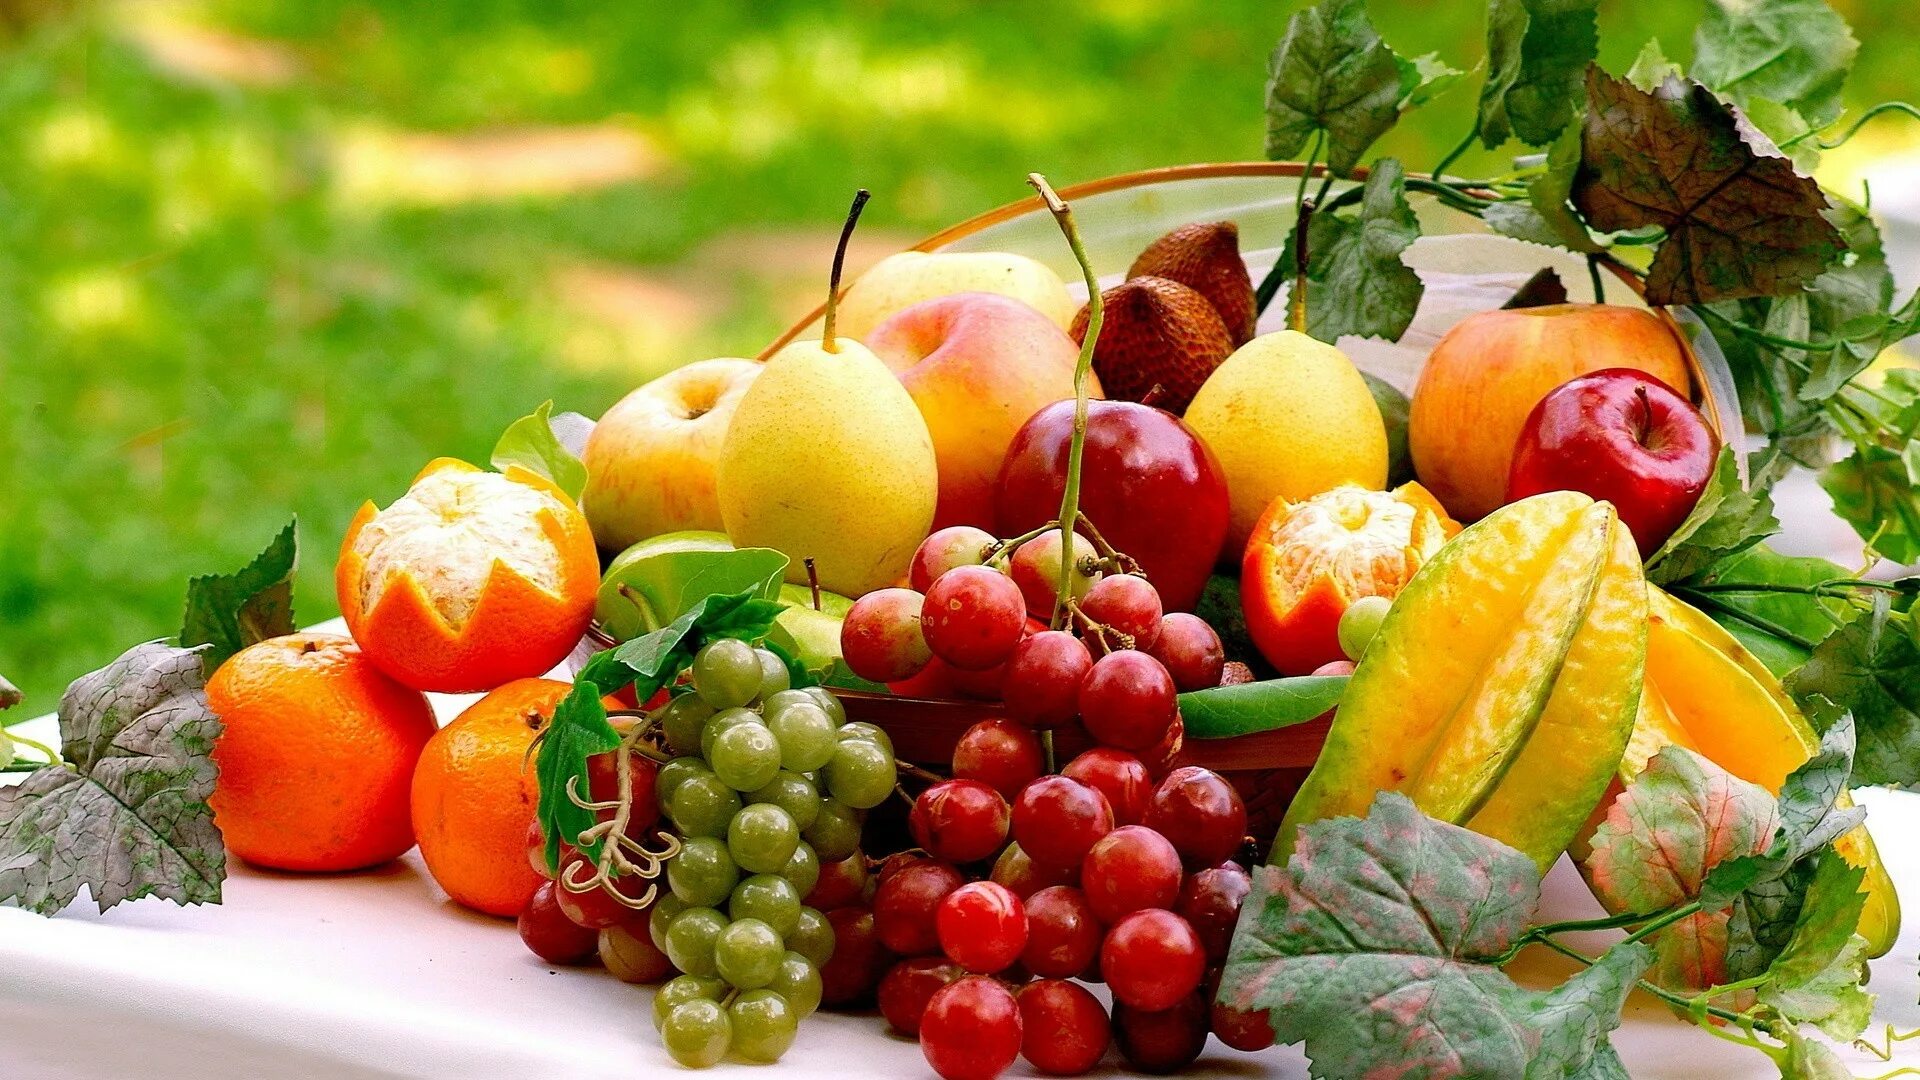 Лето время овощей и фруктов. Красивые фрукты. Овощи и фрукты. Сочные овощи и фрукты. Овощи, фрукты, ягоды.